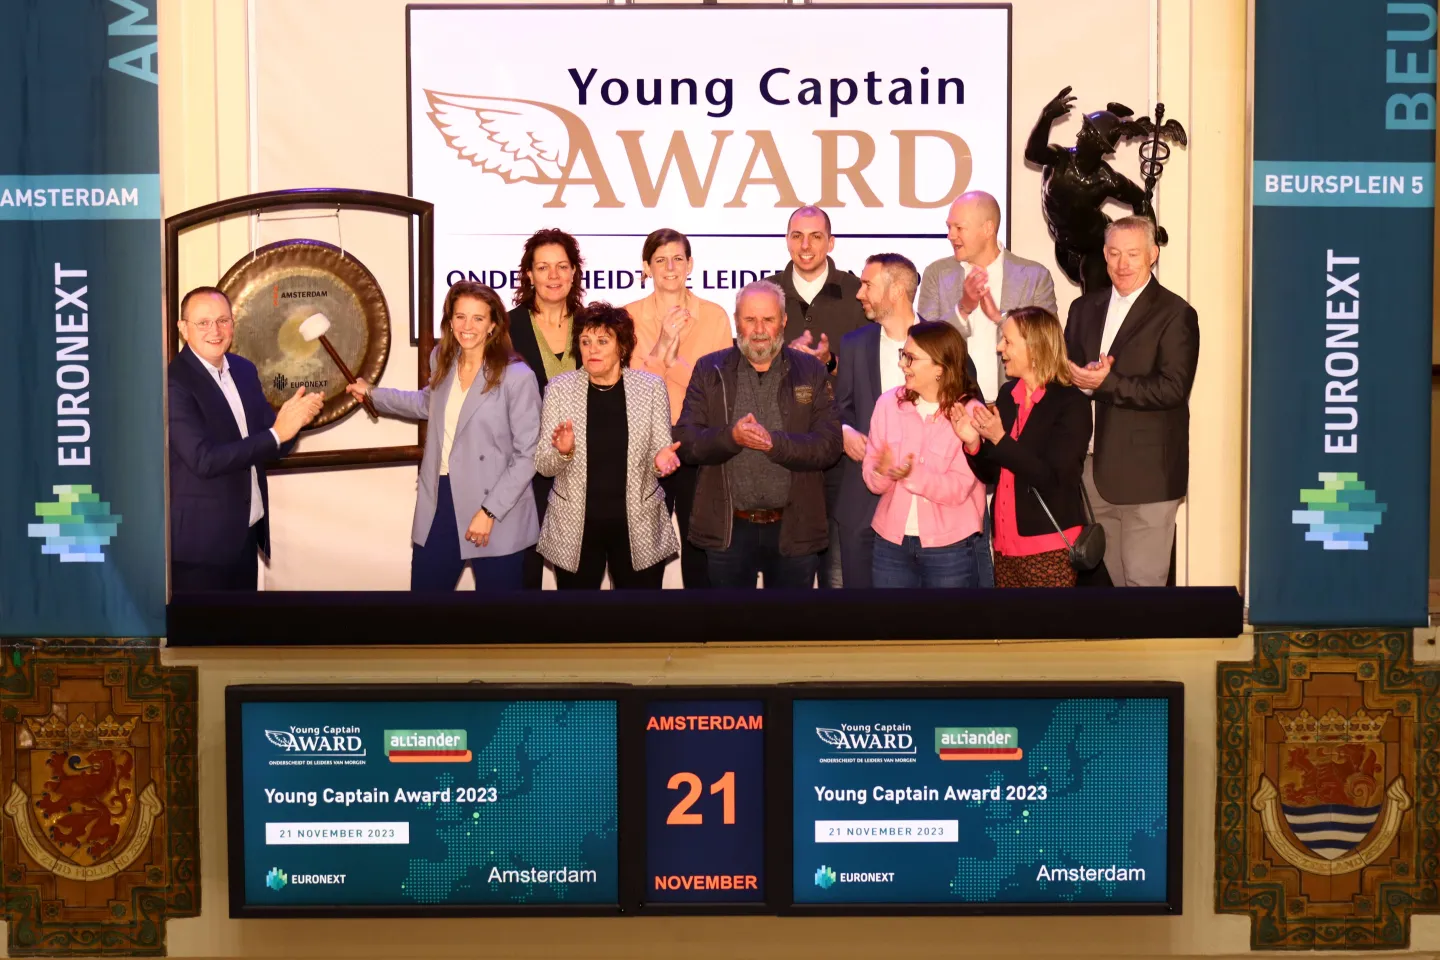 Young Captain Award 2023 - Euronext Amsterdam